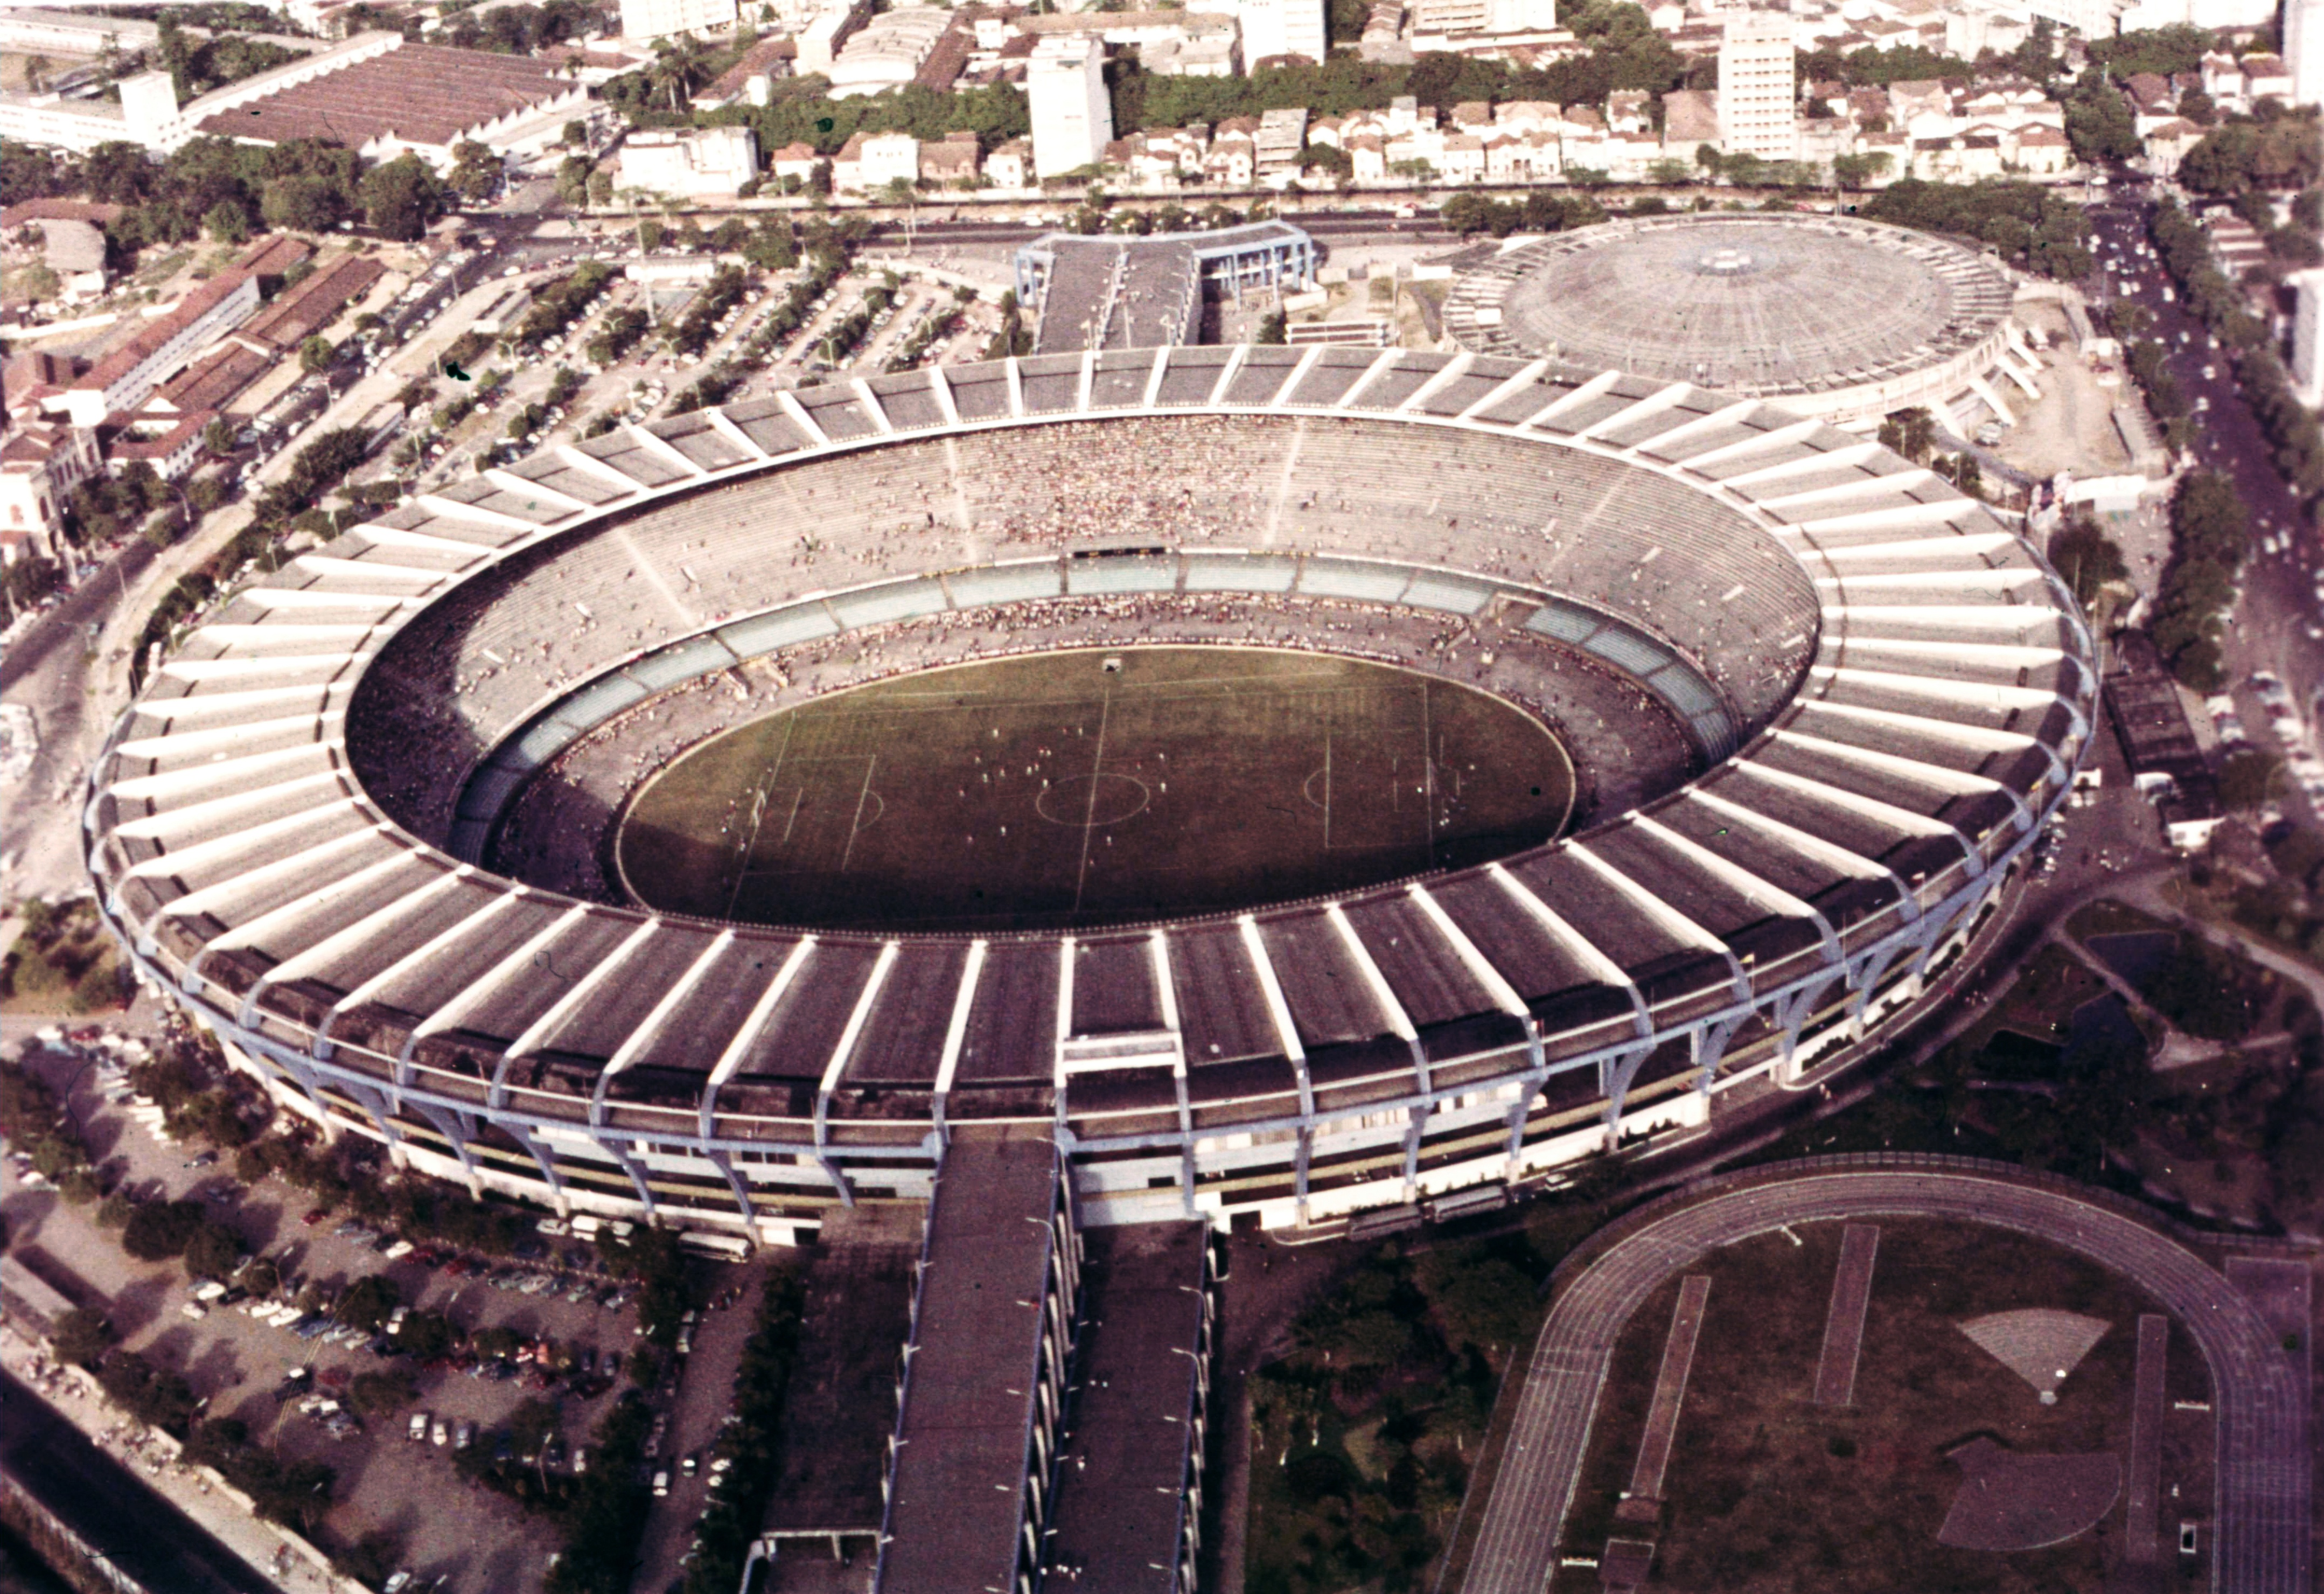 Vista aérea del Estadio Maracaná en 1950, un estadio de fútbol con una gran capacidad para espectadores.